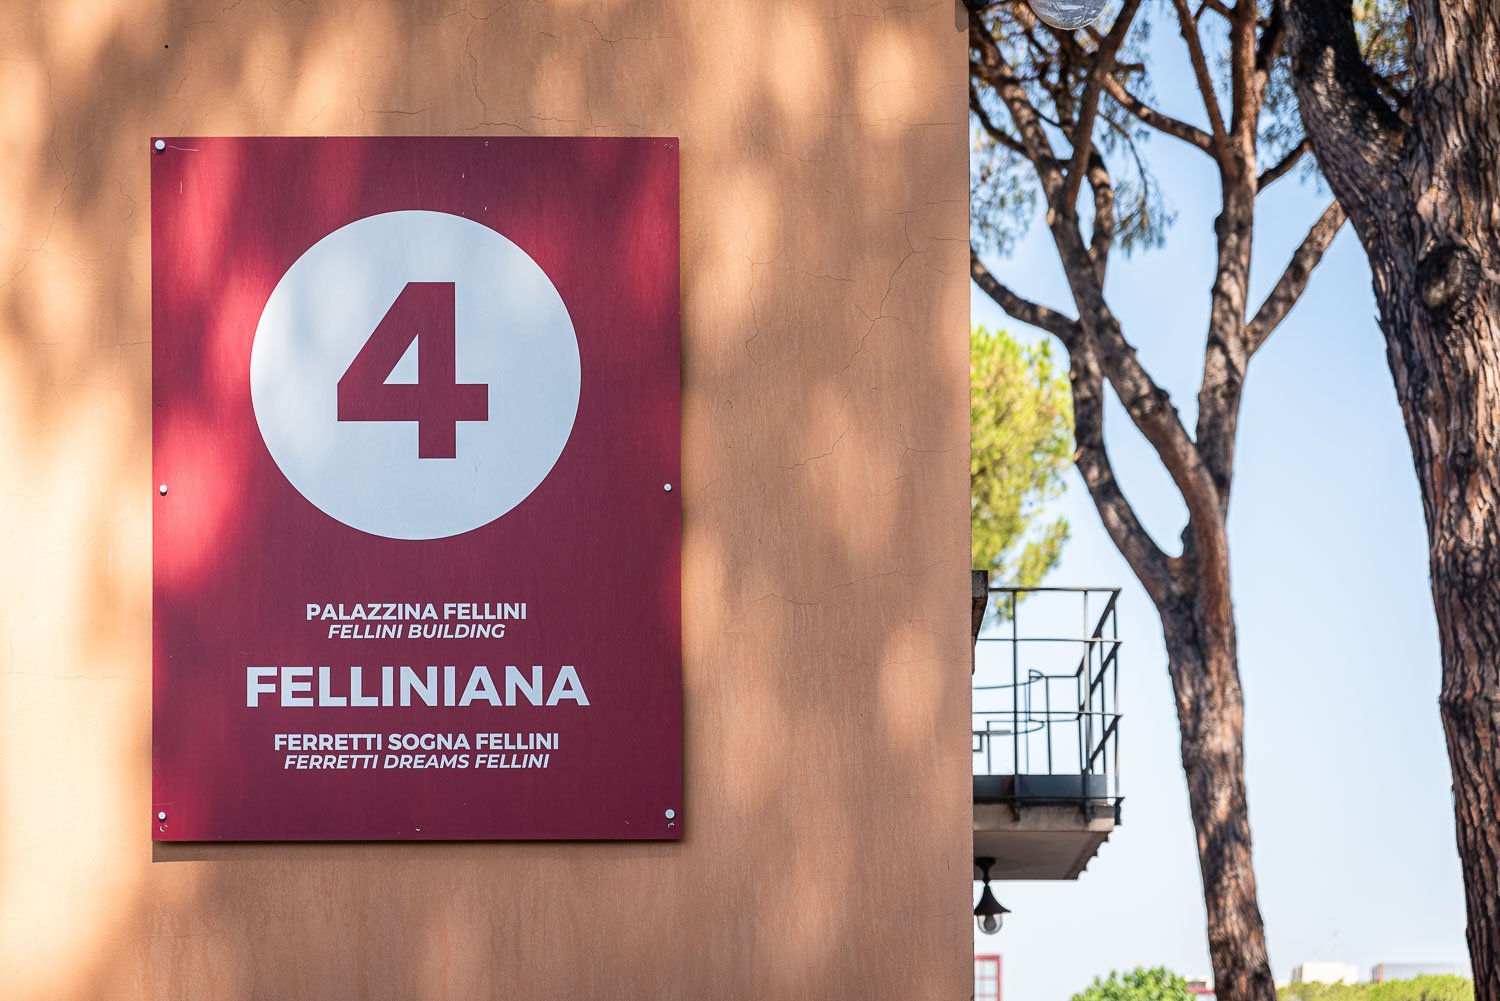 Cinecittà Studios - Fellini Exhibit